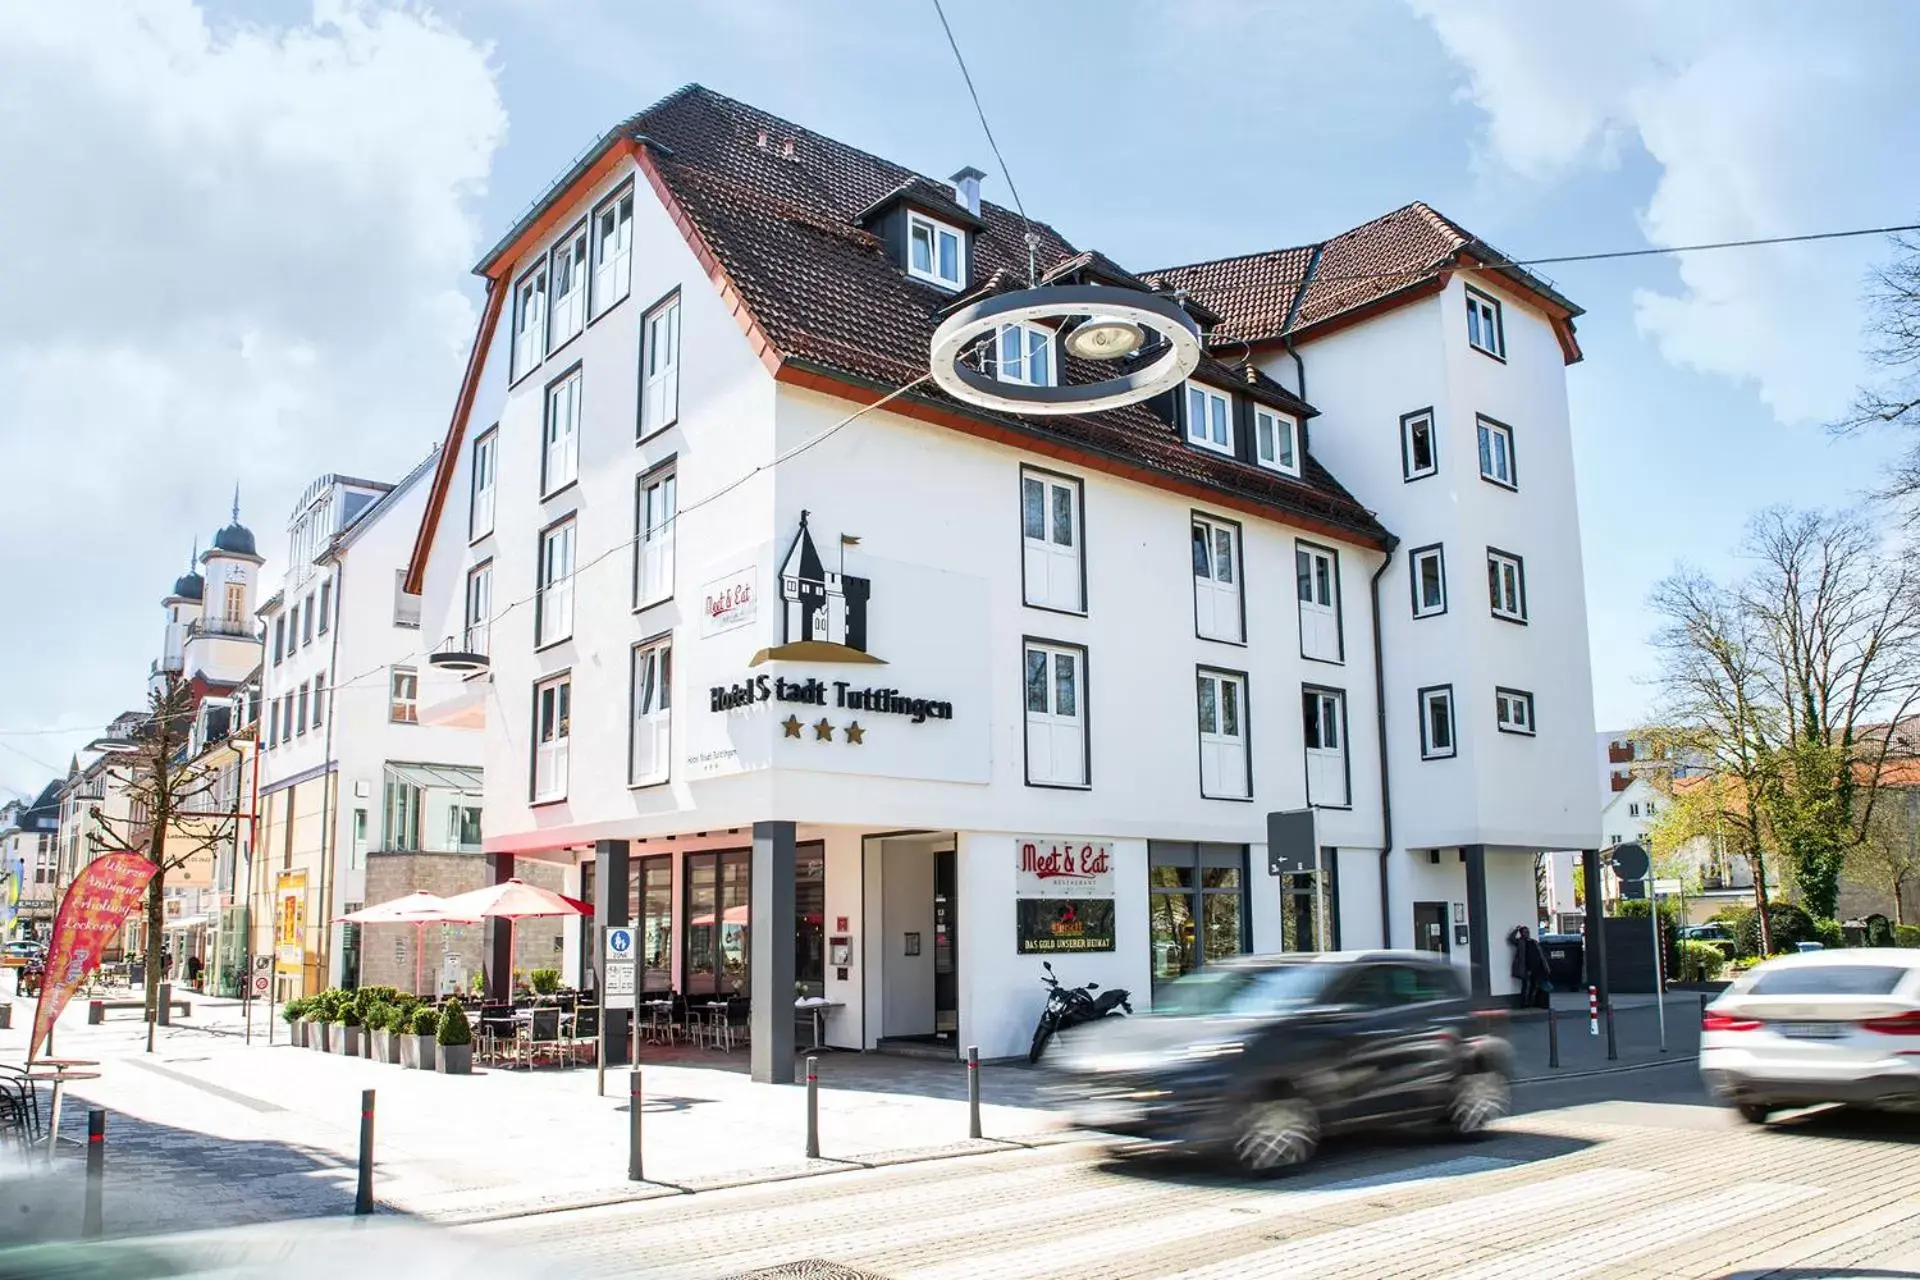 Property Building in Hotel Stadt Tuttlingen